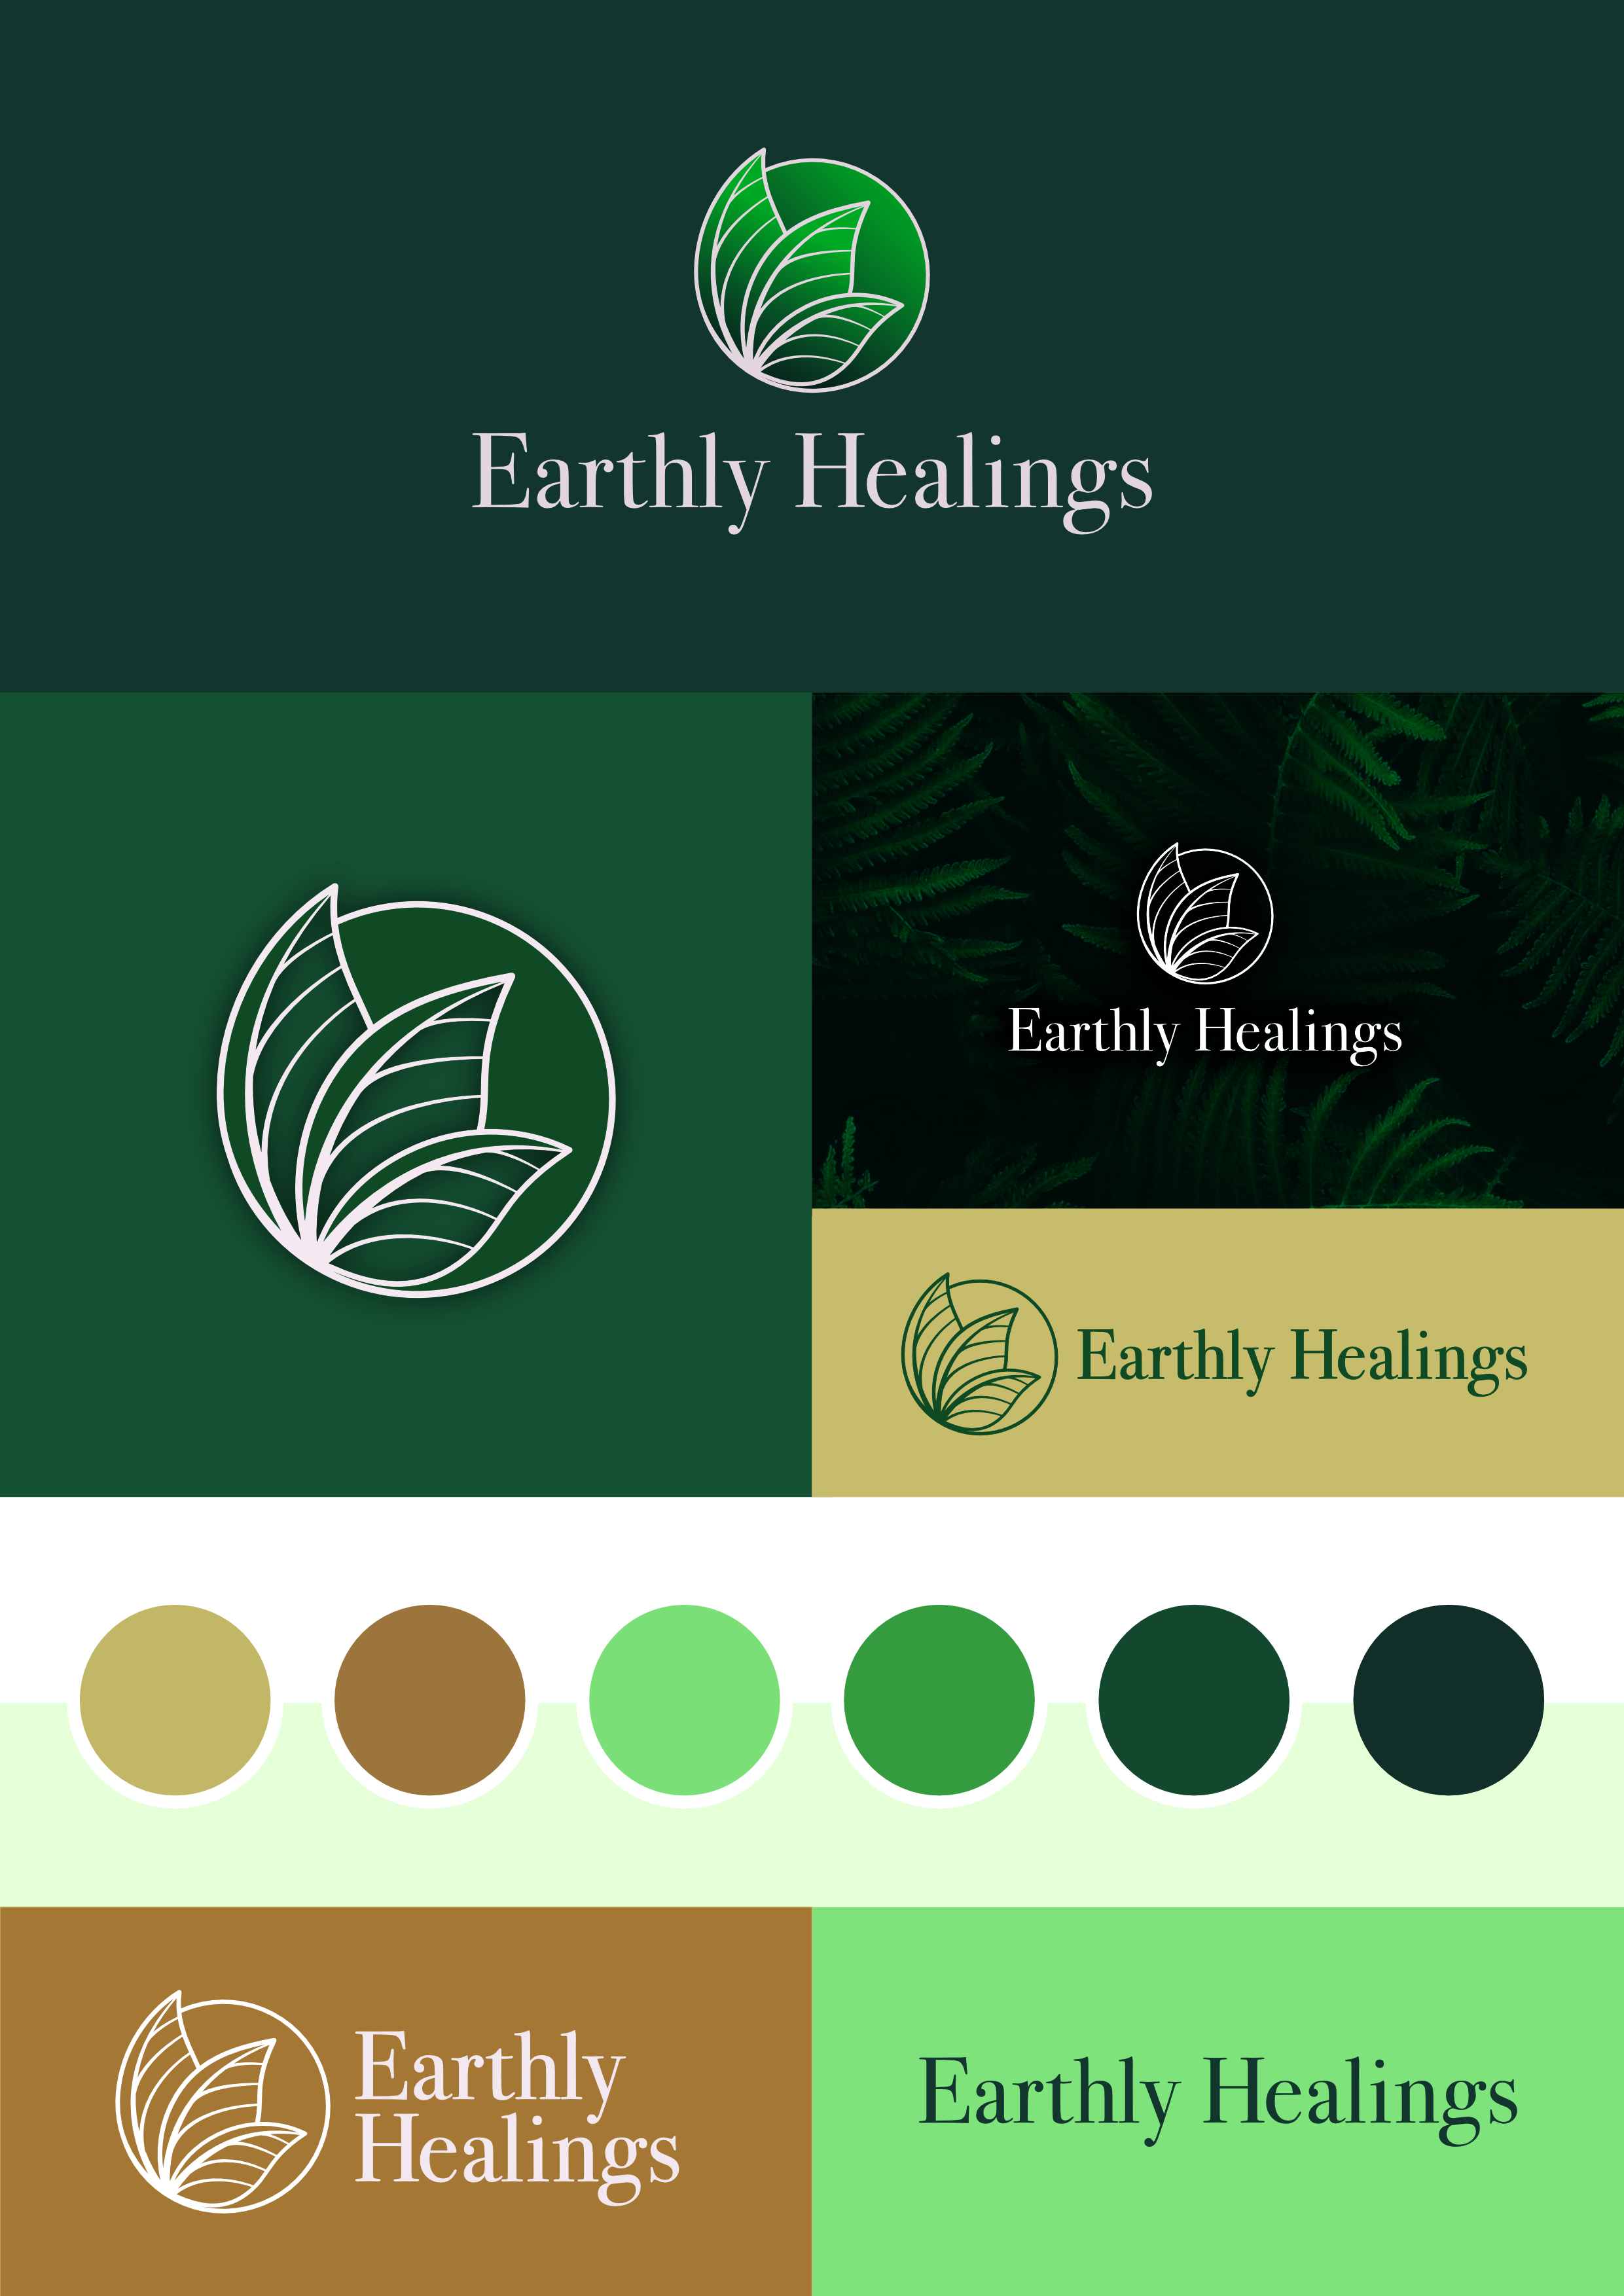 Earthly Healings Branding